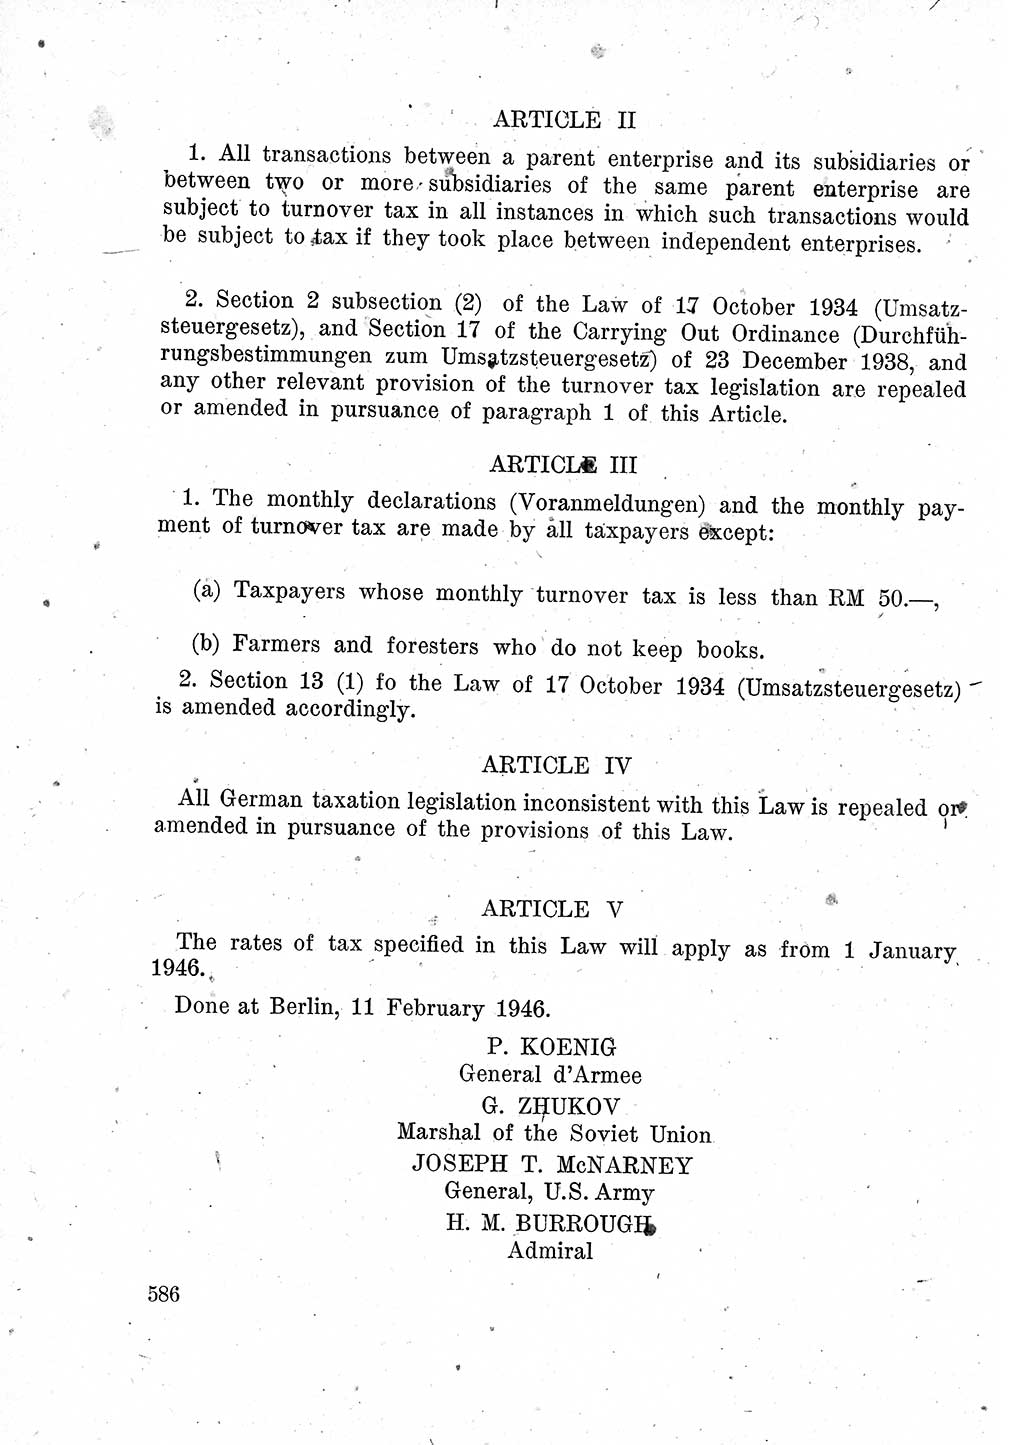 Das Recht der Besatzungsmacht (Deutschland), Proklamationen, Deklerationen, Verordnungen, Gesetze und Bekanntmachungen 1947, Seite 586 (R. Bes. Dtl. 1947, S. 586)